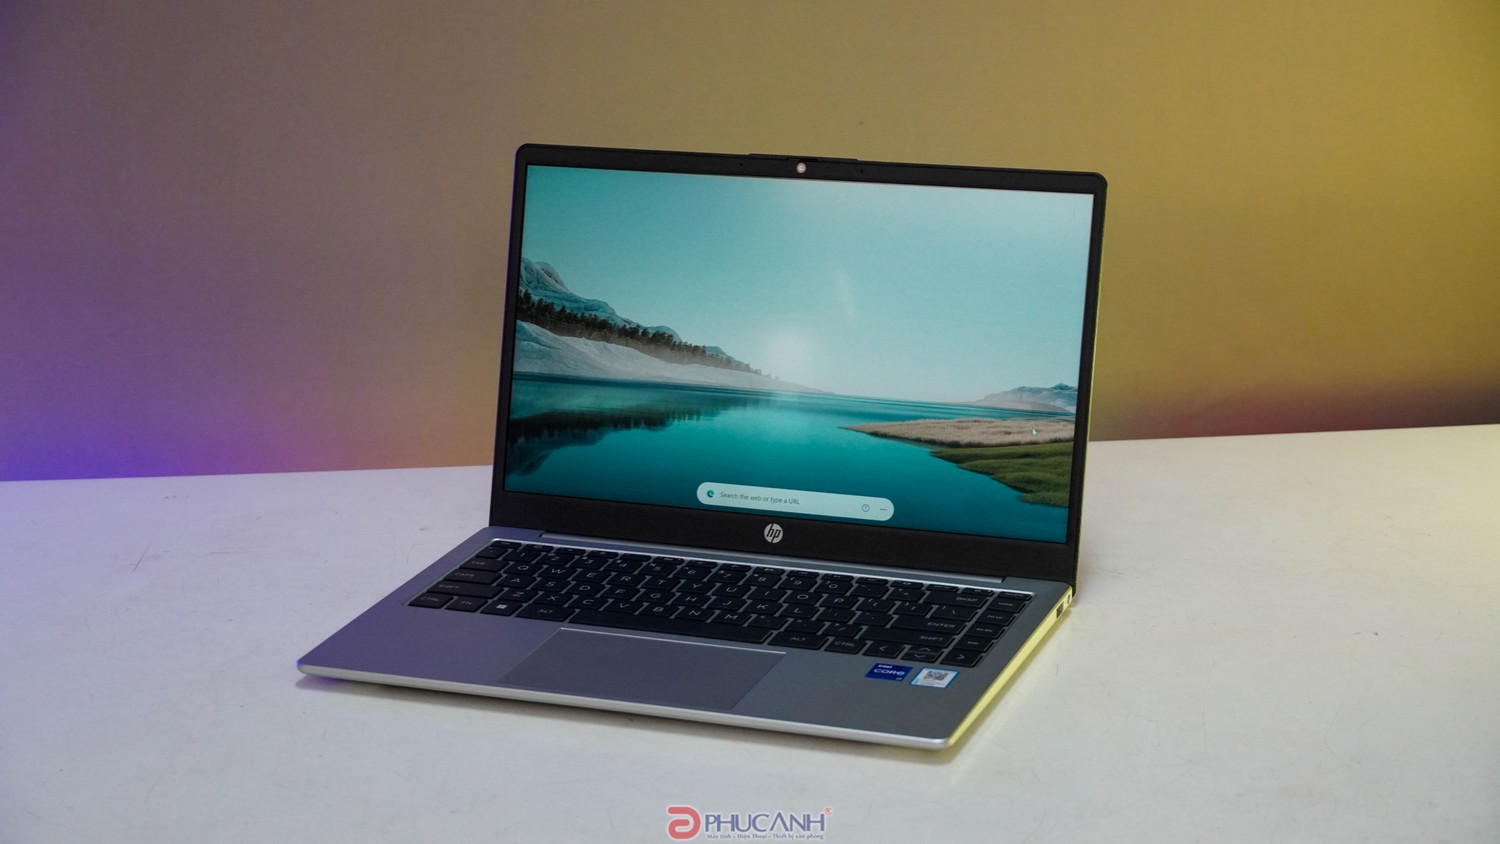 Đánh giá Laptop HP 240 G10 - Thiết kế thanh lịch, hiệu suất vượt trội dành cho doanh nghiệp